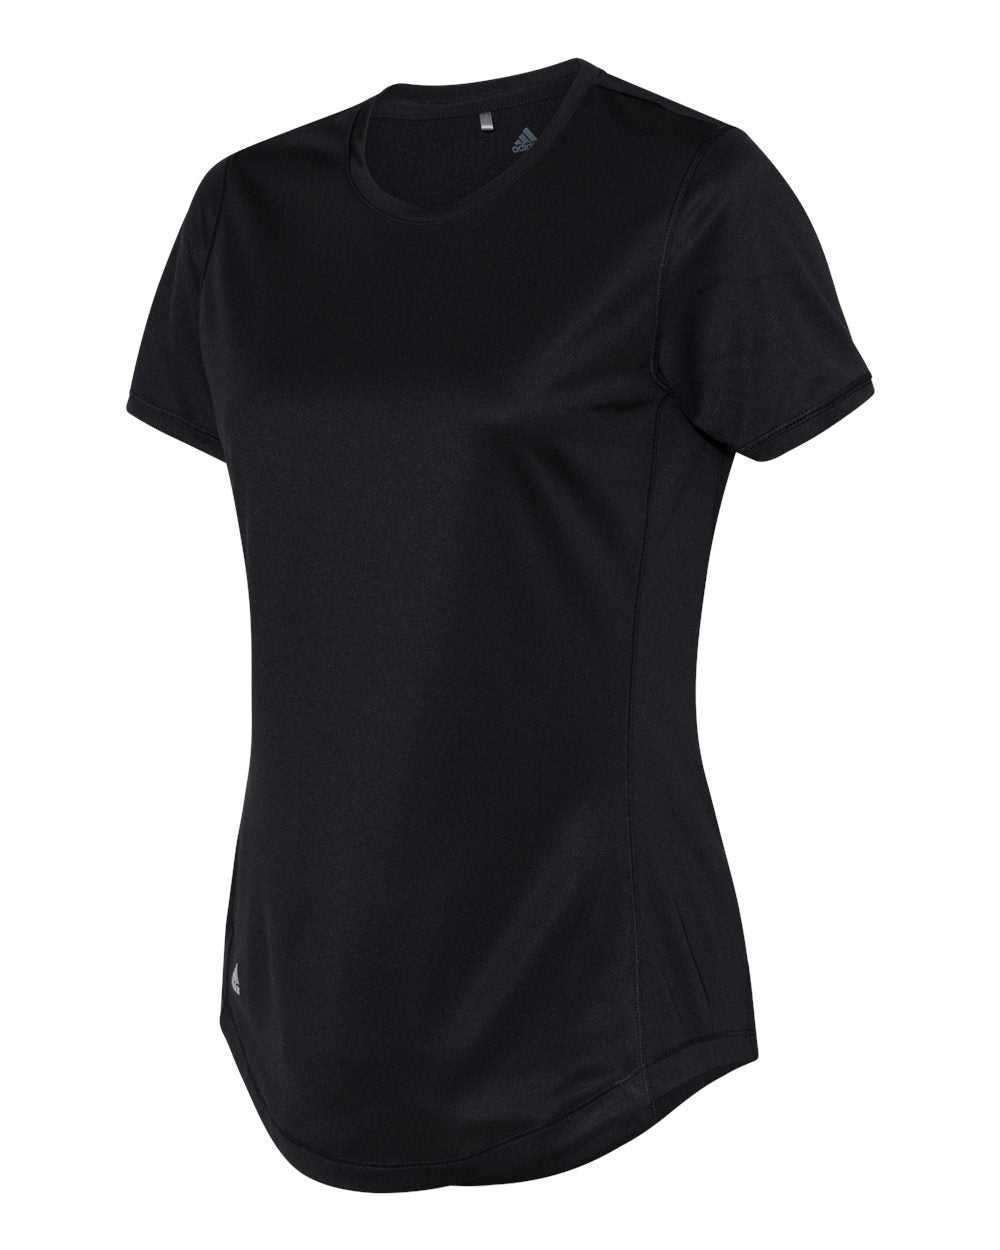 Adidas A377 Women's Sport T-Shirt - Black - HIT a Double